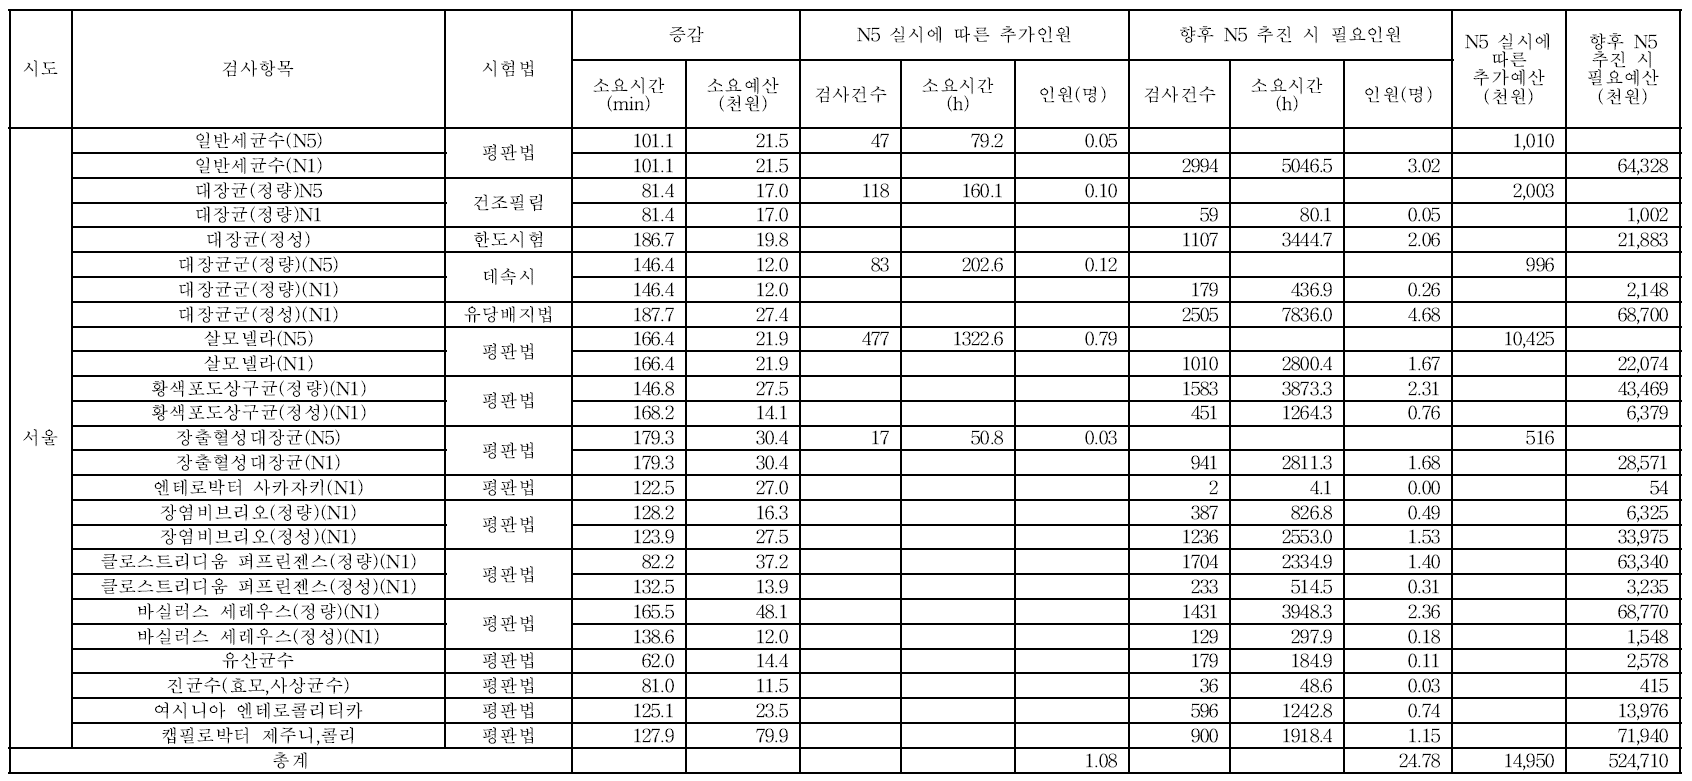 통계적기법 도입에 따른 서울시보건환경연구원 소요예산 및 인력